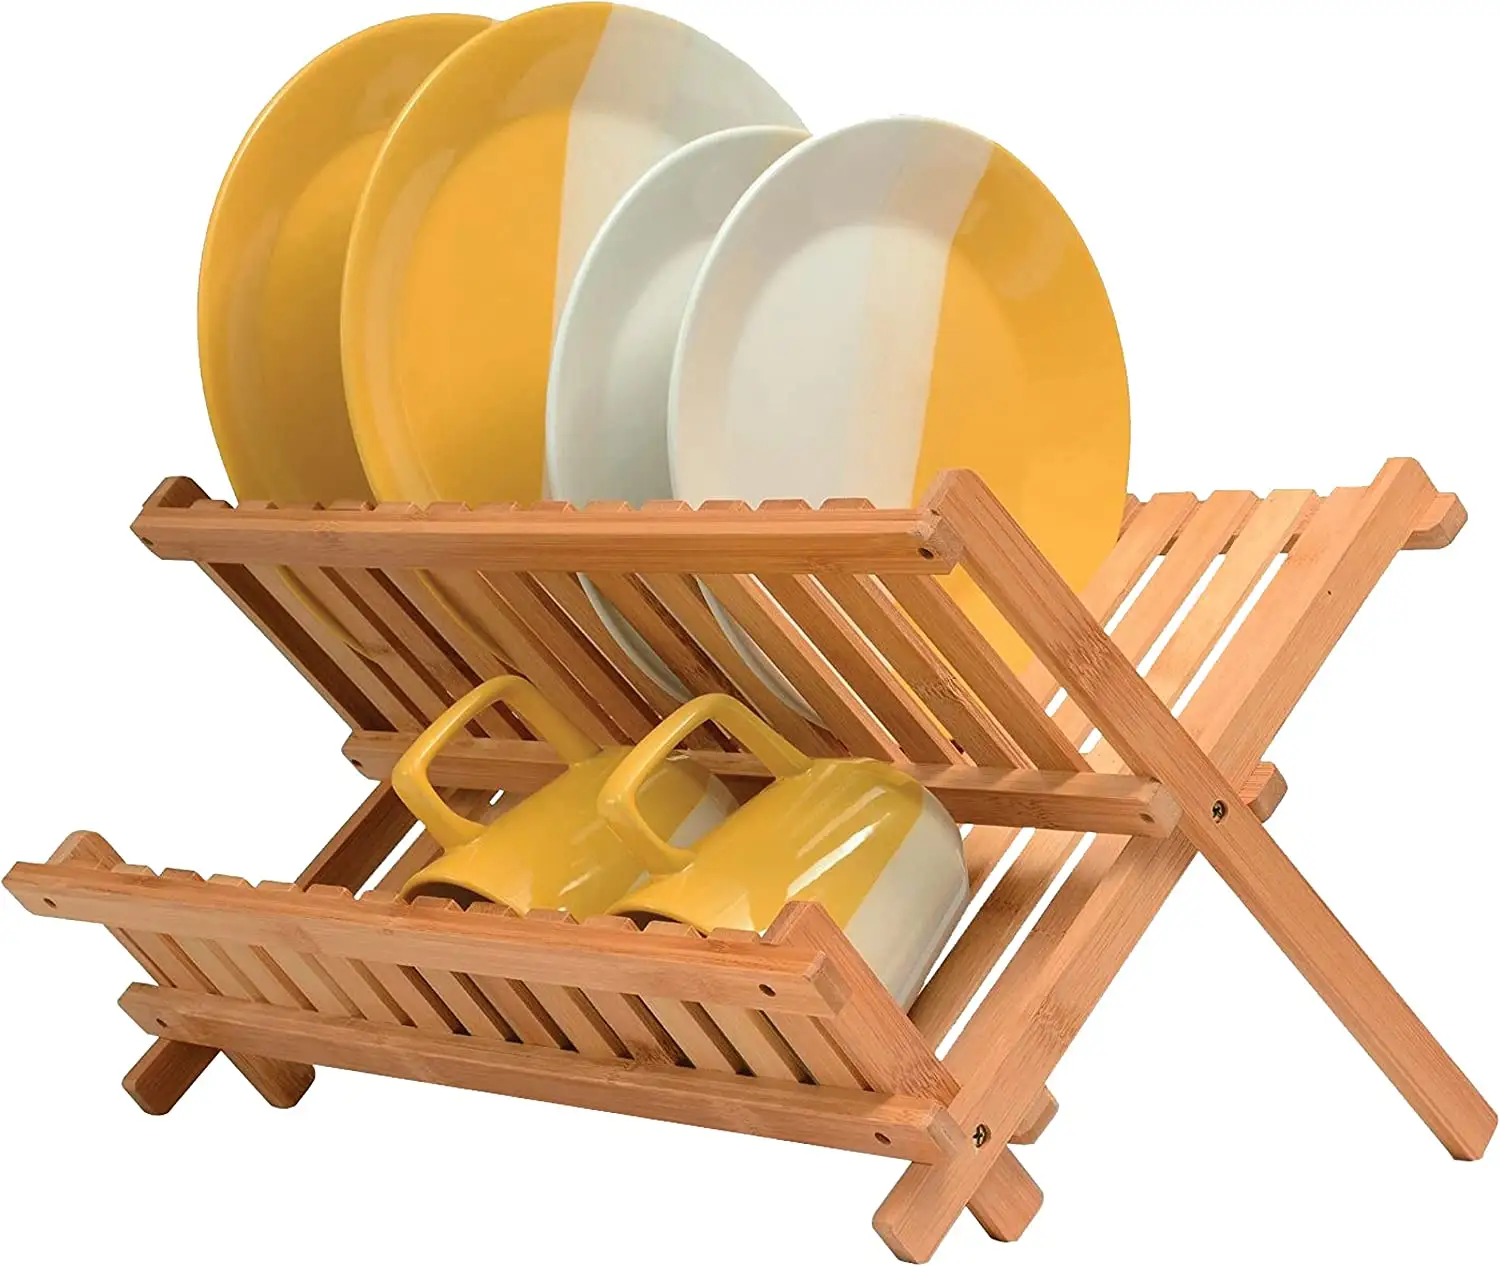 Rak pengering piring bambu 2 tingkat, Rak pengering piring dapur dapat dilipat untuk meja dapur